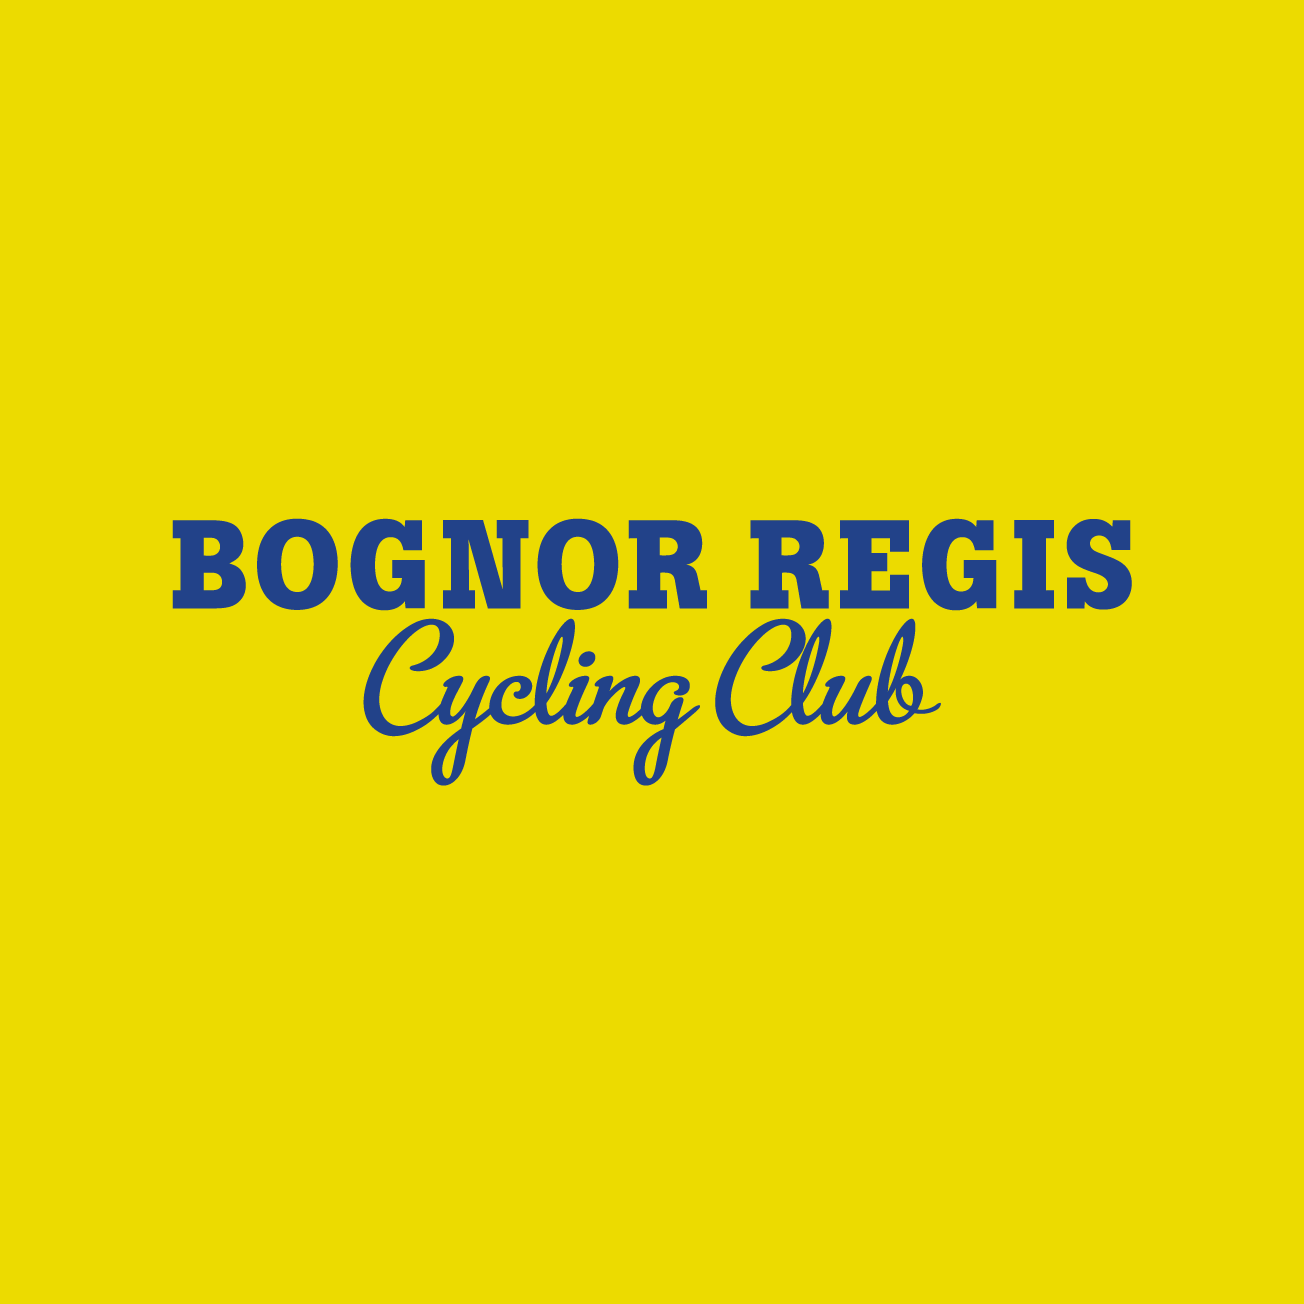 Club Image for BOGNOR REGIS